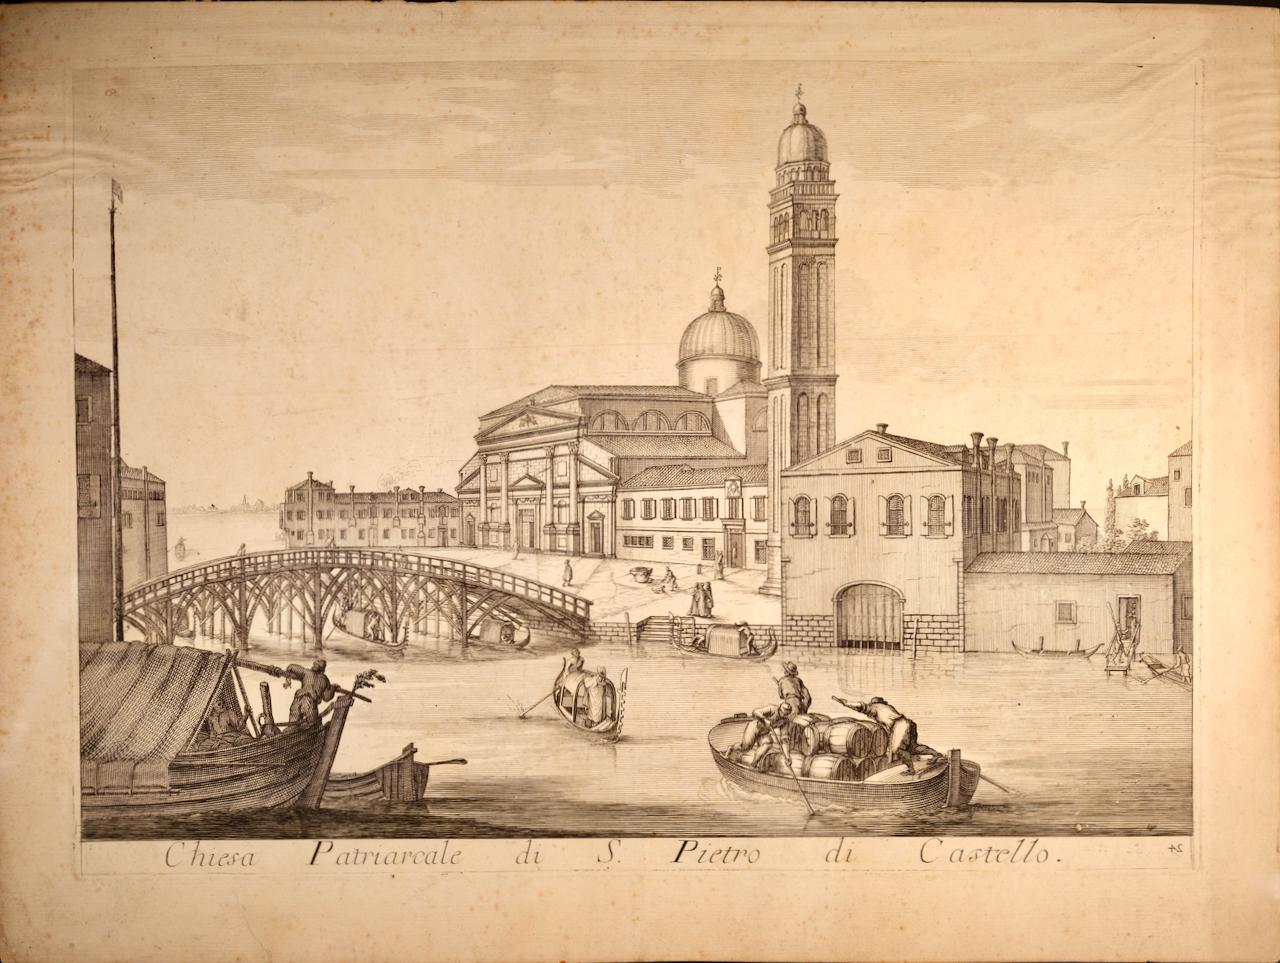 Landscape Print Domenico Lovisa - Venise : vue de la basilique de S. Pietro di Castello au XVIIIe siècle par Lovisa